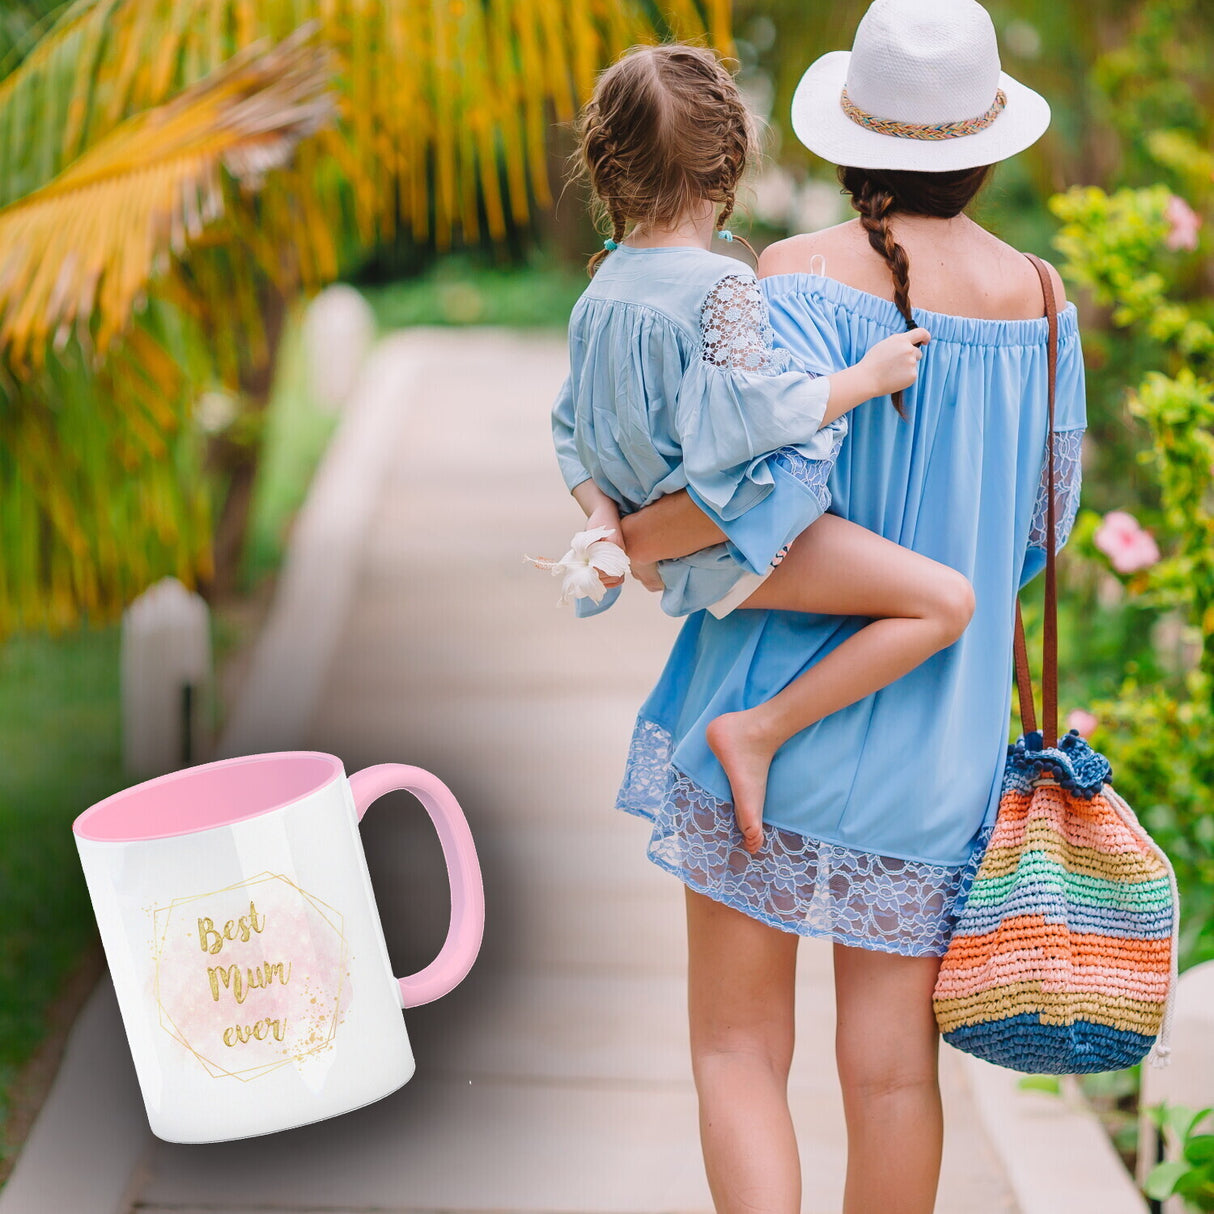 Best Mom ever Kaffeebecher als Geschenk zum Muttertag